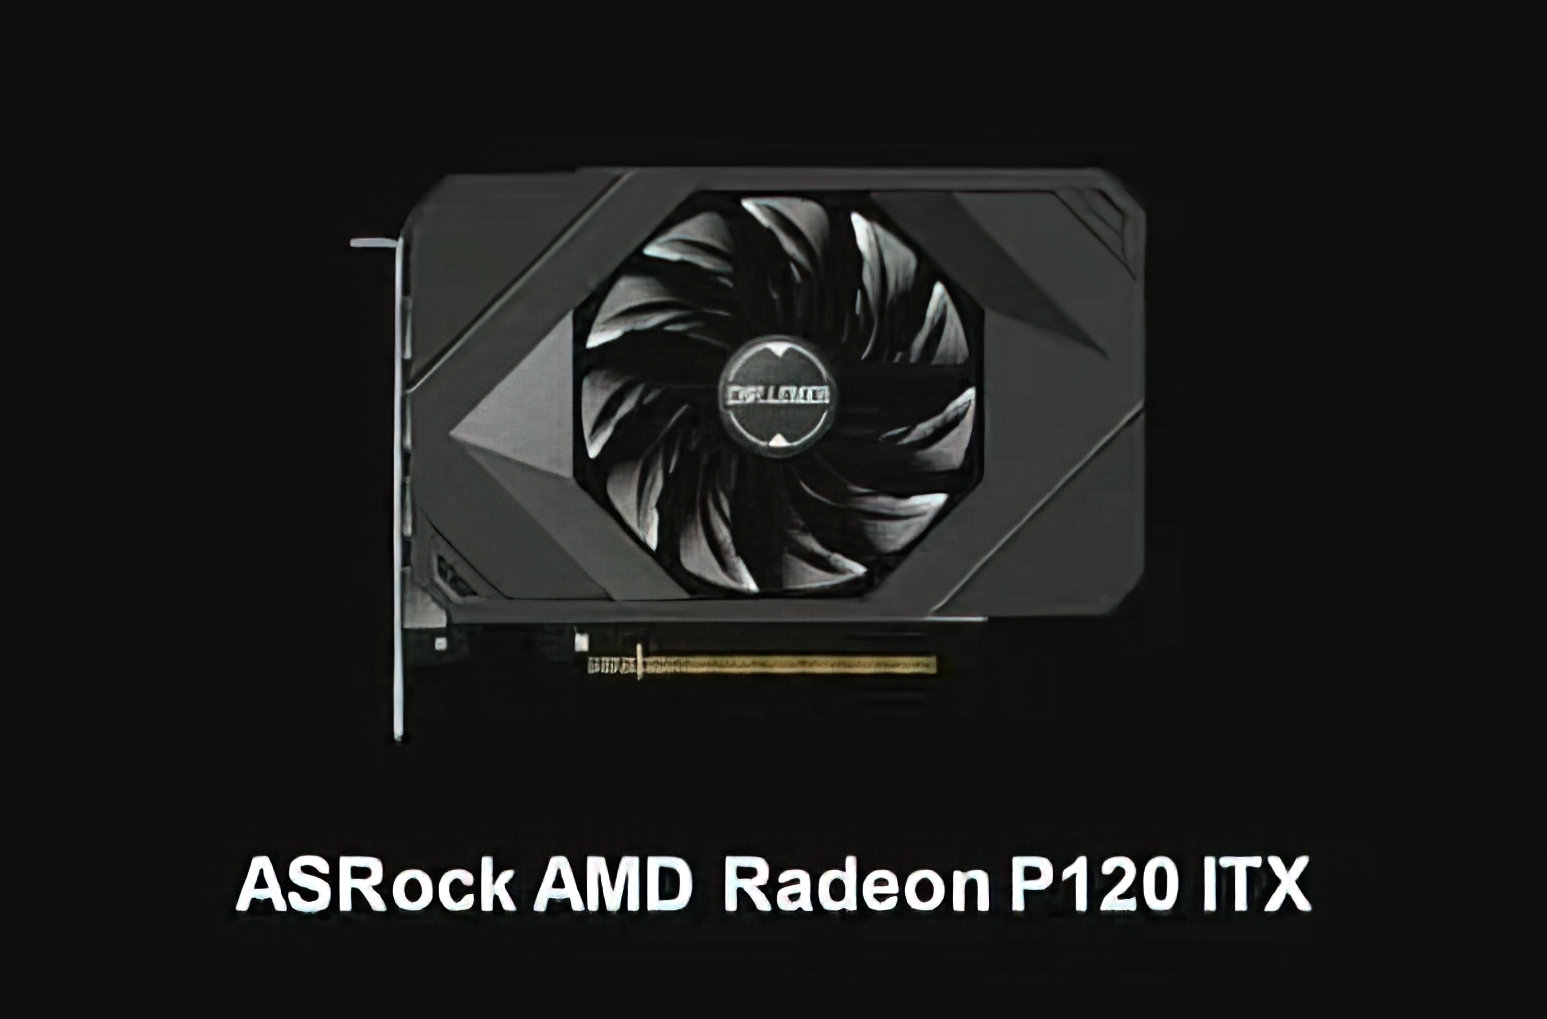 华擎曝光AMD神秘新卡 从未见过的特殊名字